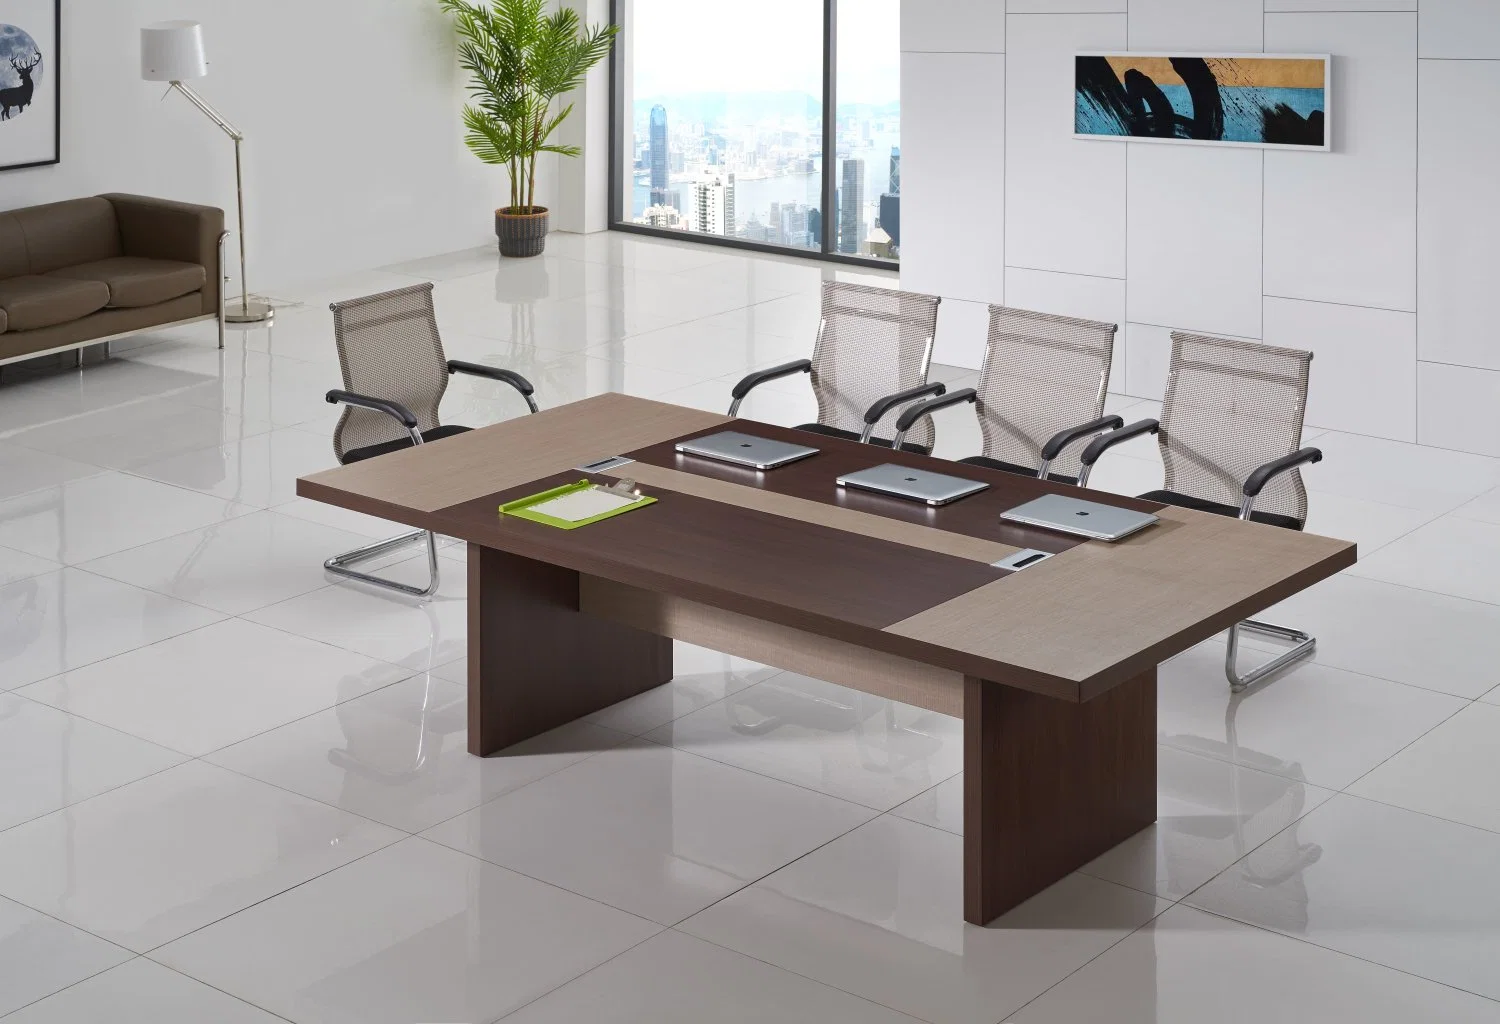 Sala de reuniones de diseño moderno de madera persona Multi Mesa mesa de reuniones